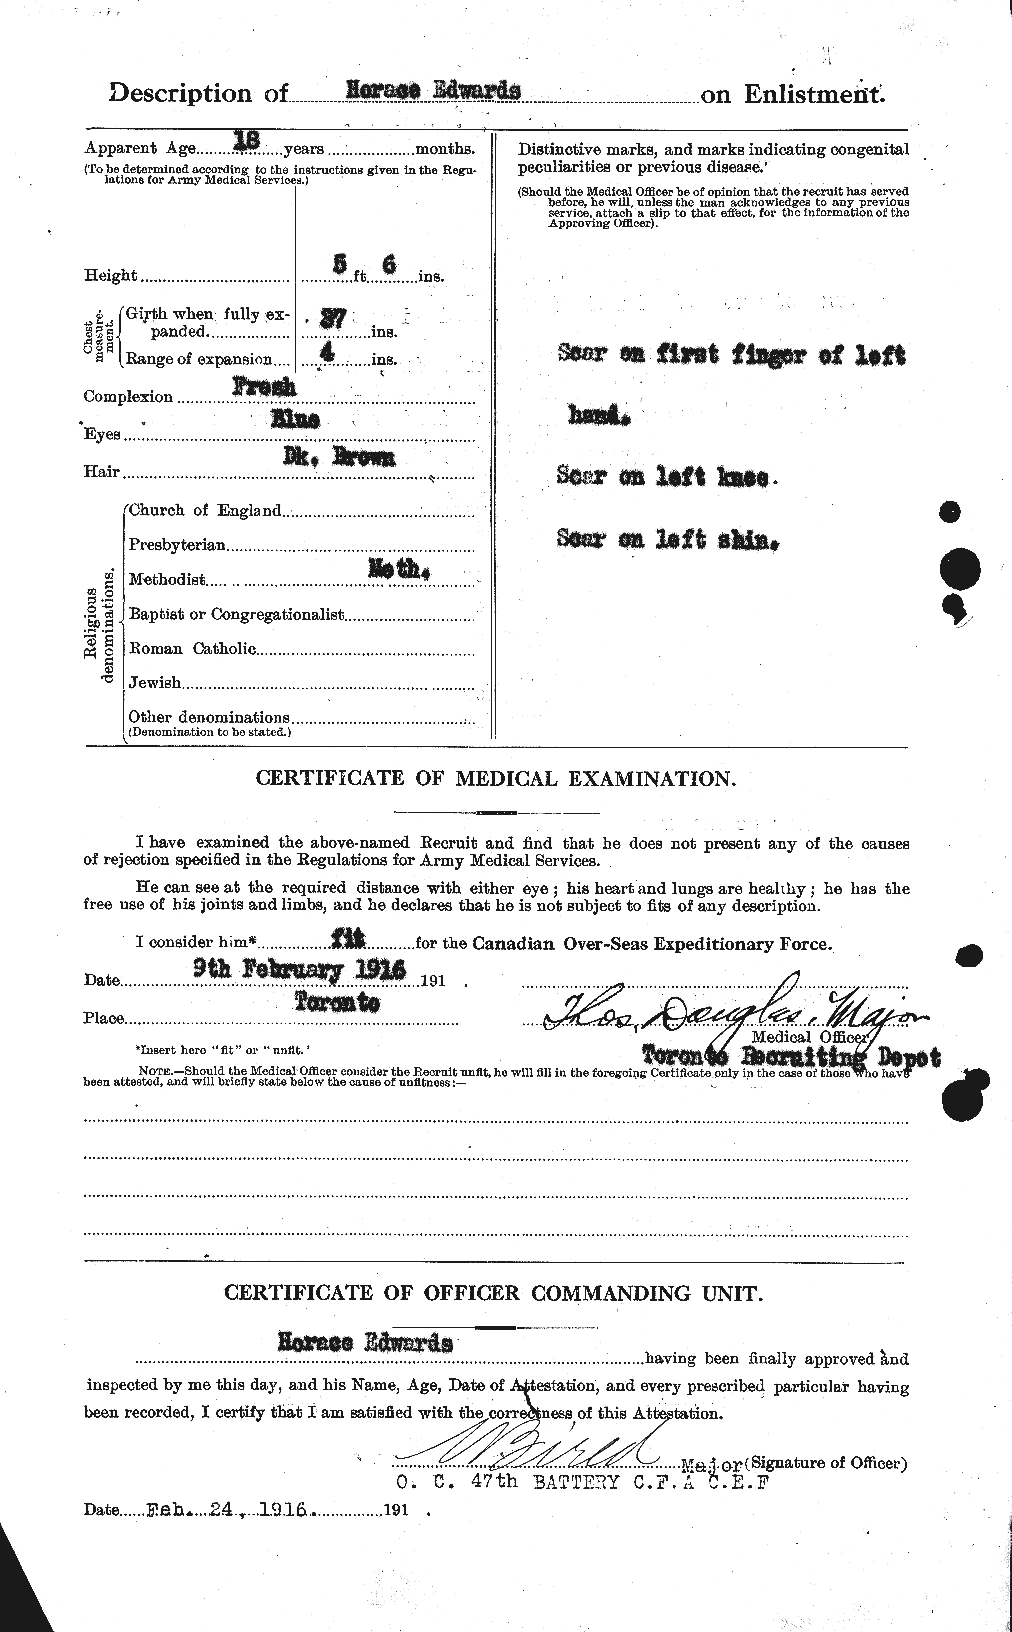 Dossiers du Personnel de la Première Guerre mondiale - CEC 309785b